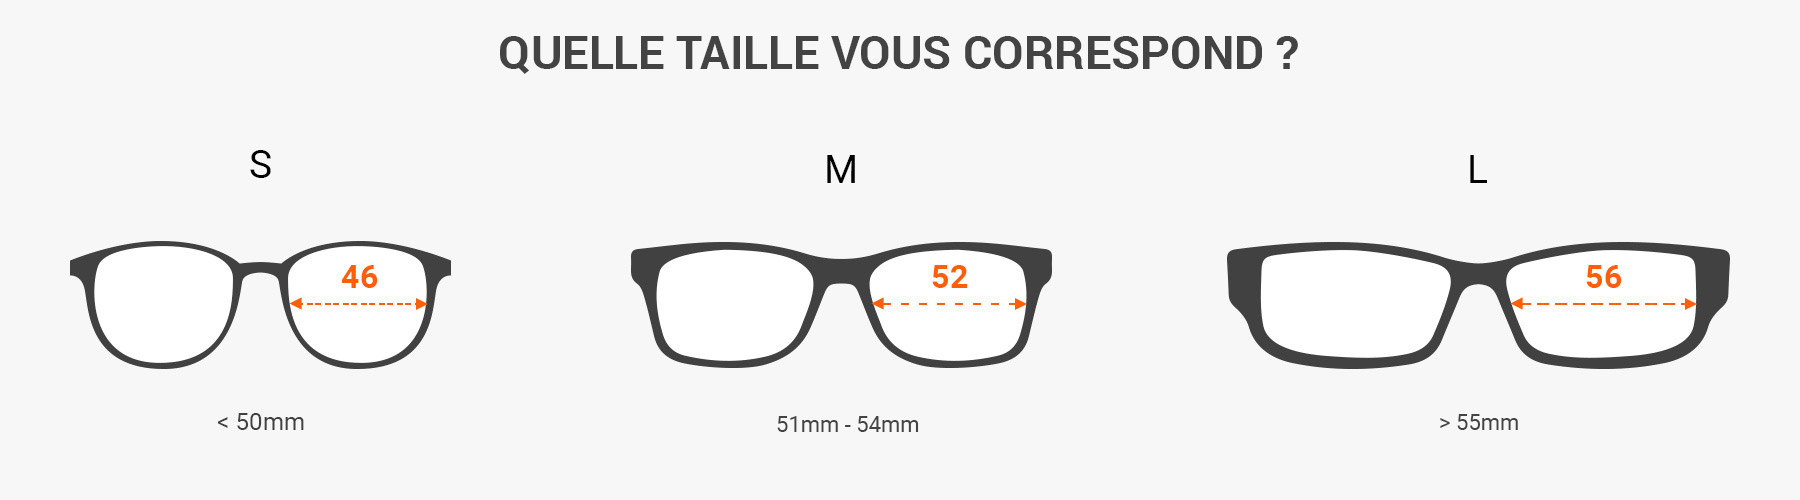 comment lire les dimensions des lunettes de soleil - Mesurer la taille des lunettes de soleil avec une règle